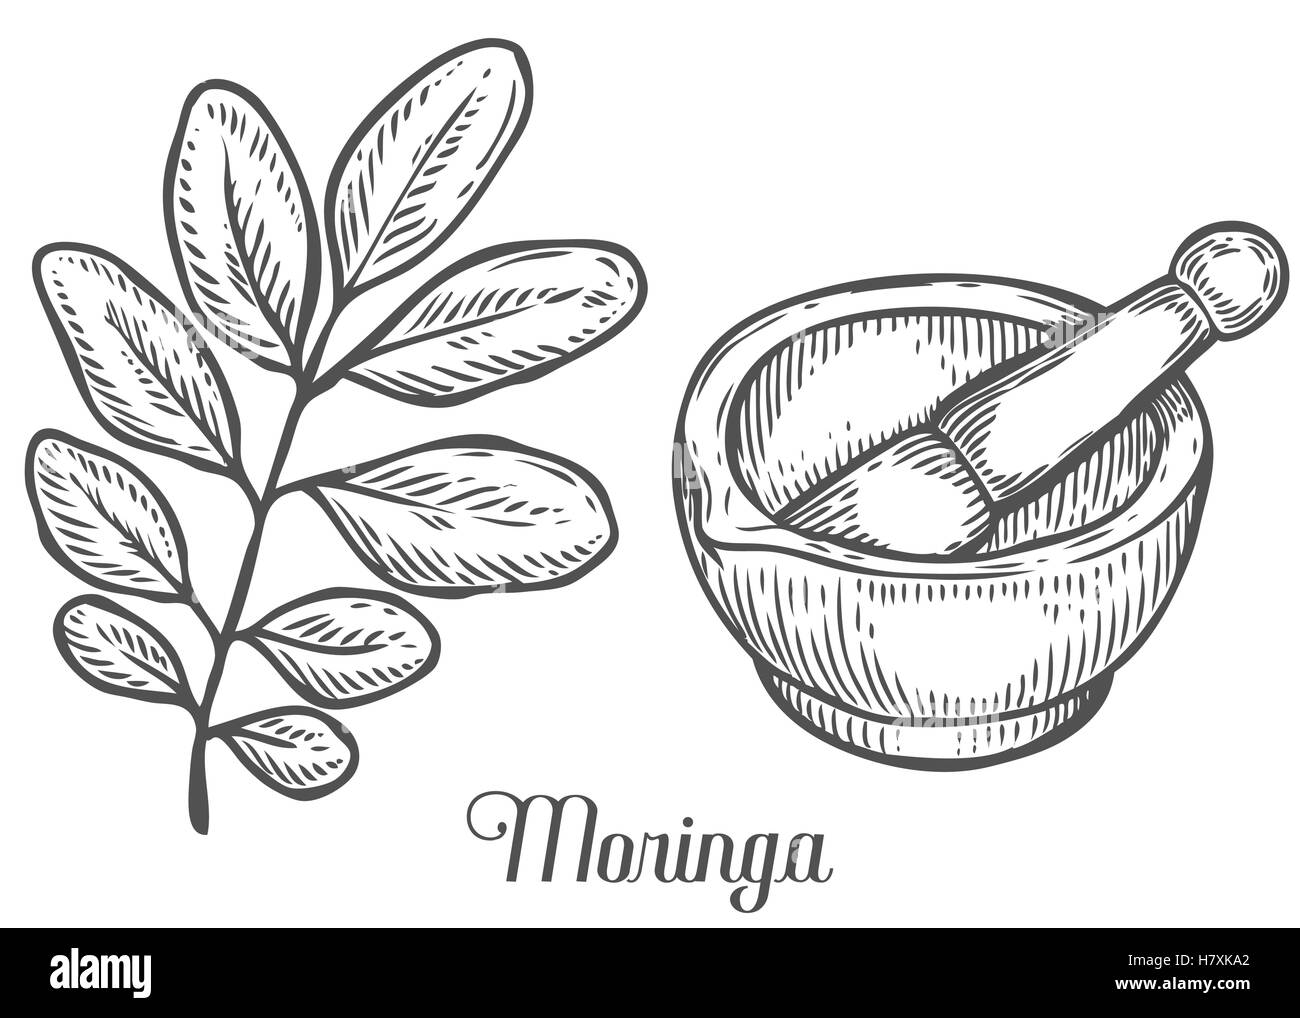 Moringa-Pflanze, Blatt mit Mörser und Stößel. Moringa Vintage skizzieren gravierte handgezeichnete Vektor-Illustration. Weißen Hintergrund. Stock Vektor